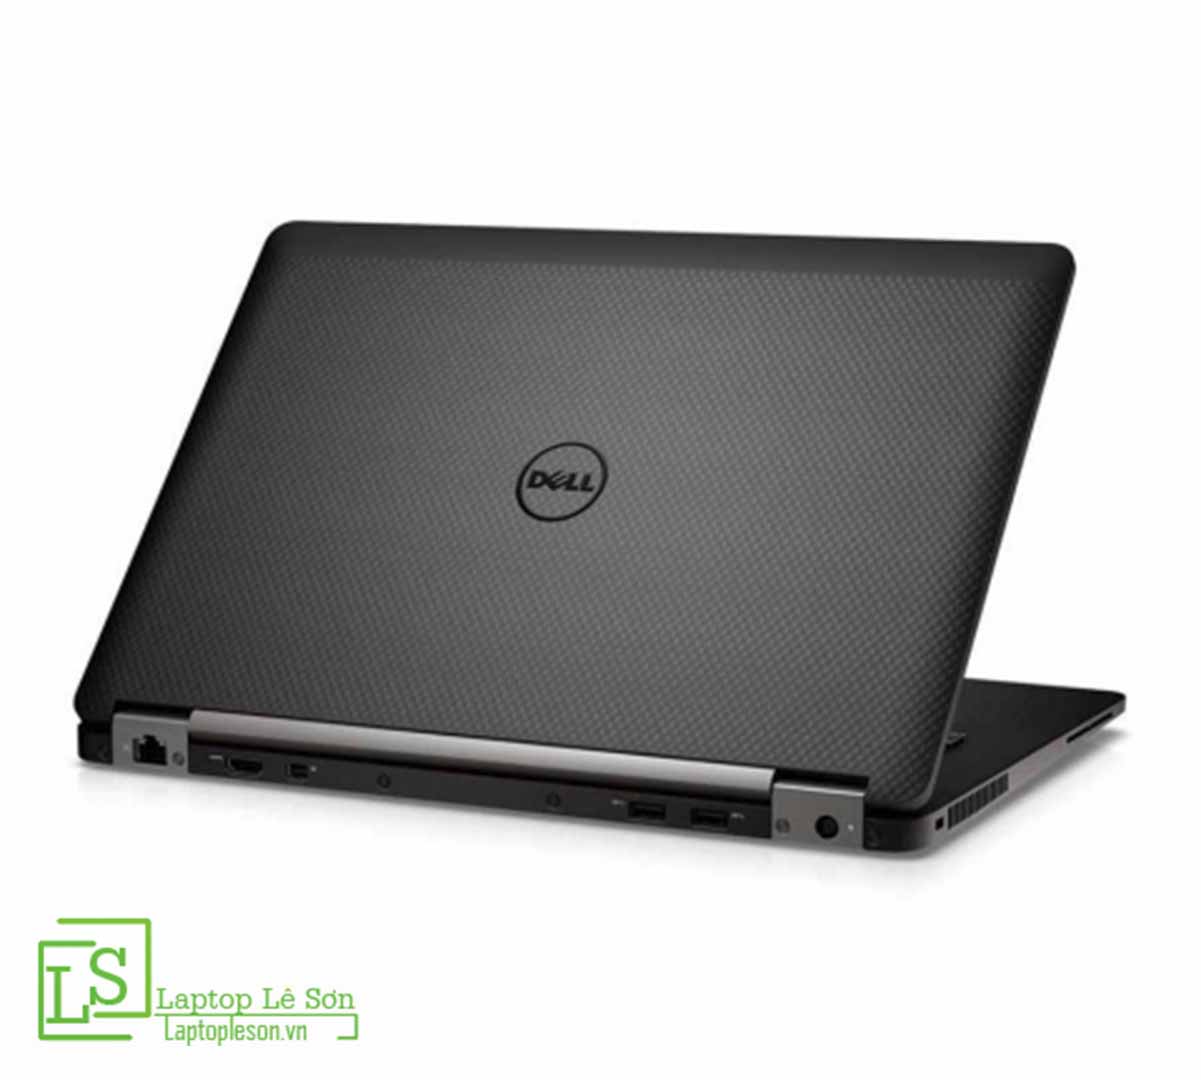 Dell Latitude E7470 - Laptop văn phòng cấu hình cao, ngoại hình đẹp!